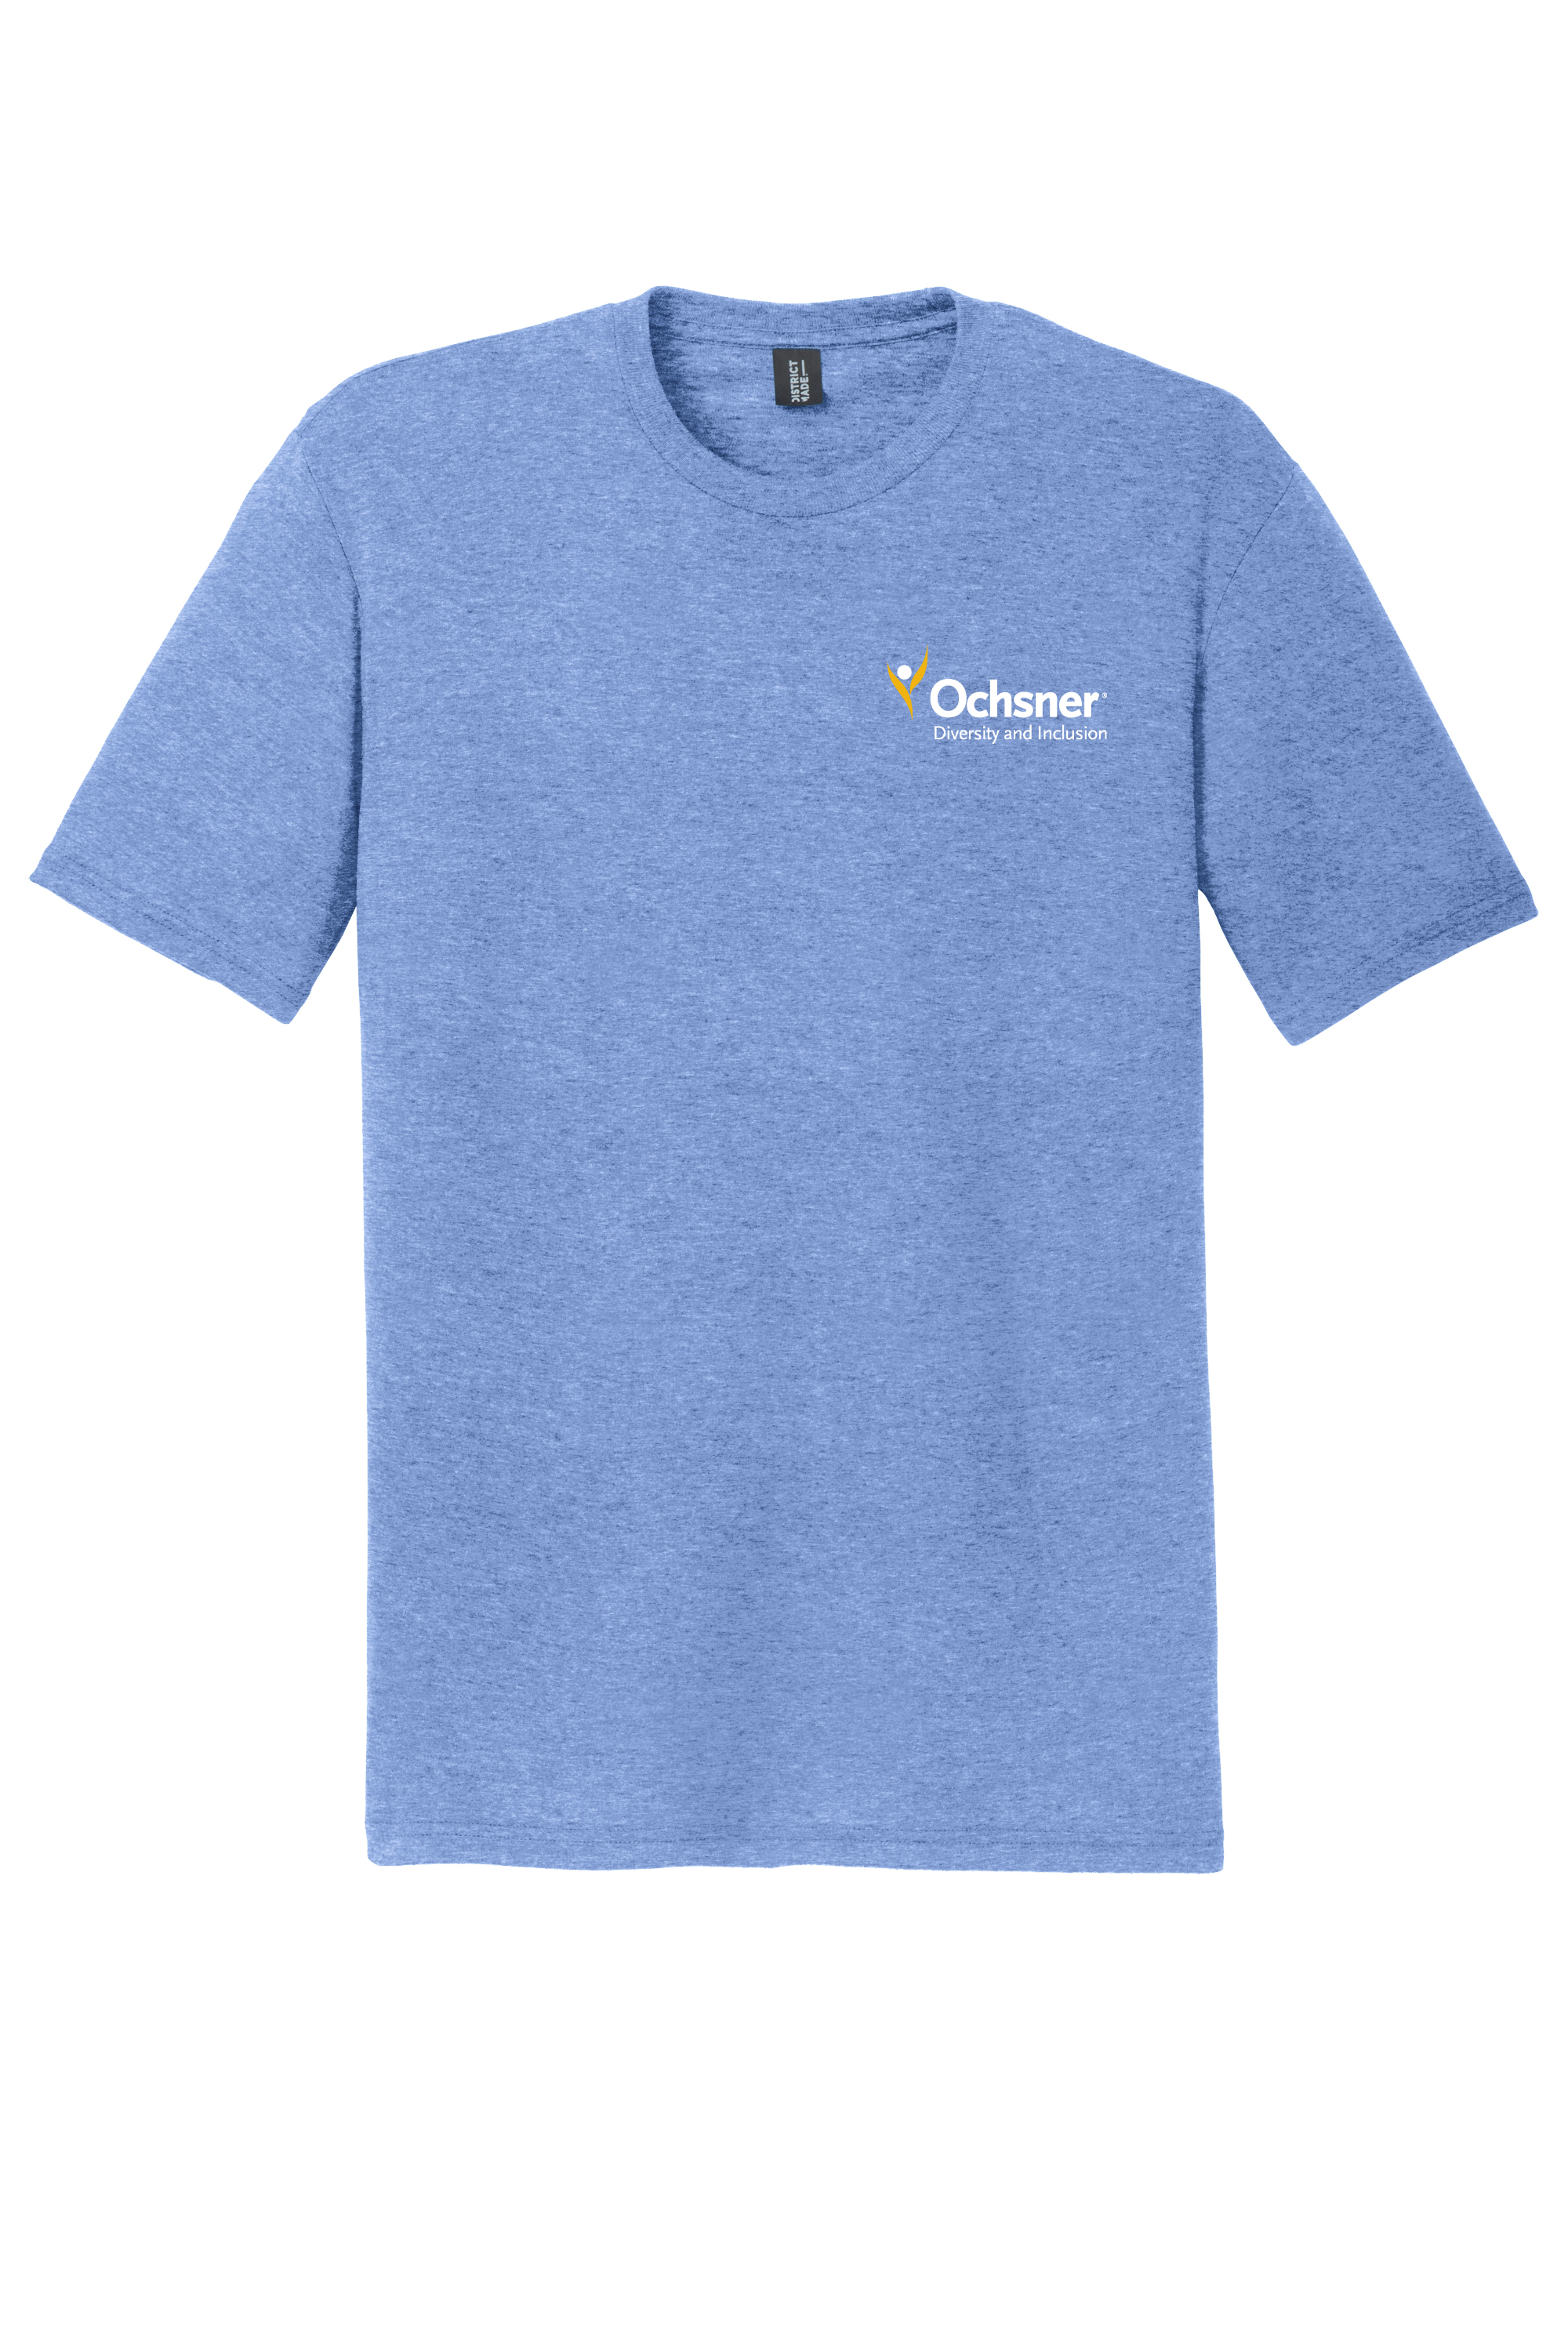 Ochsner PRIDE Unisex T-Shirt, , large image number 2